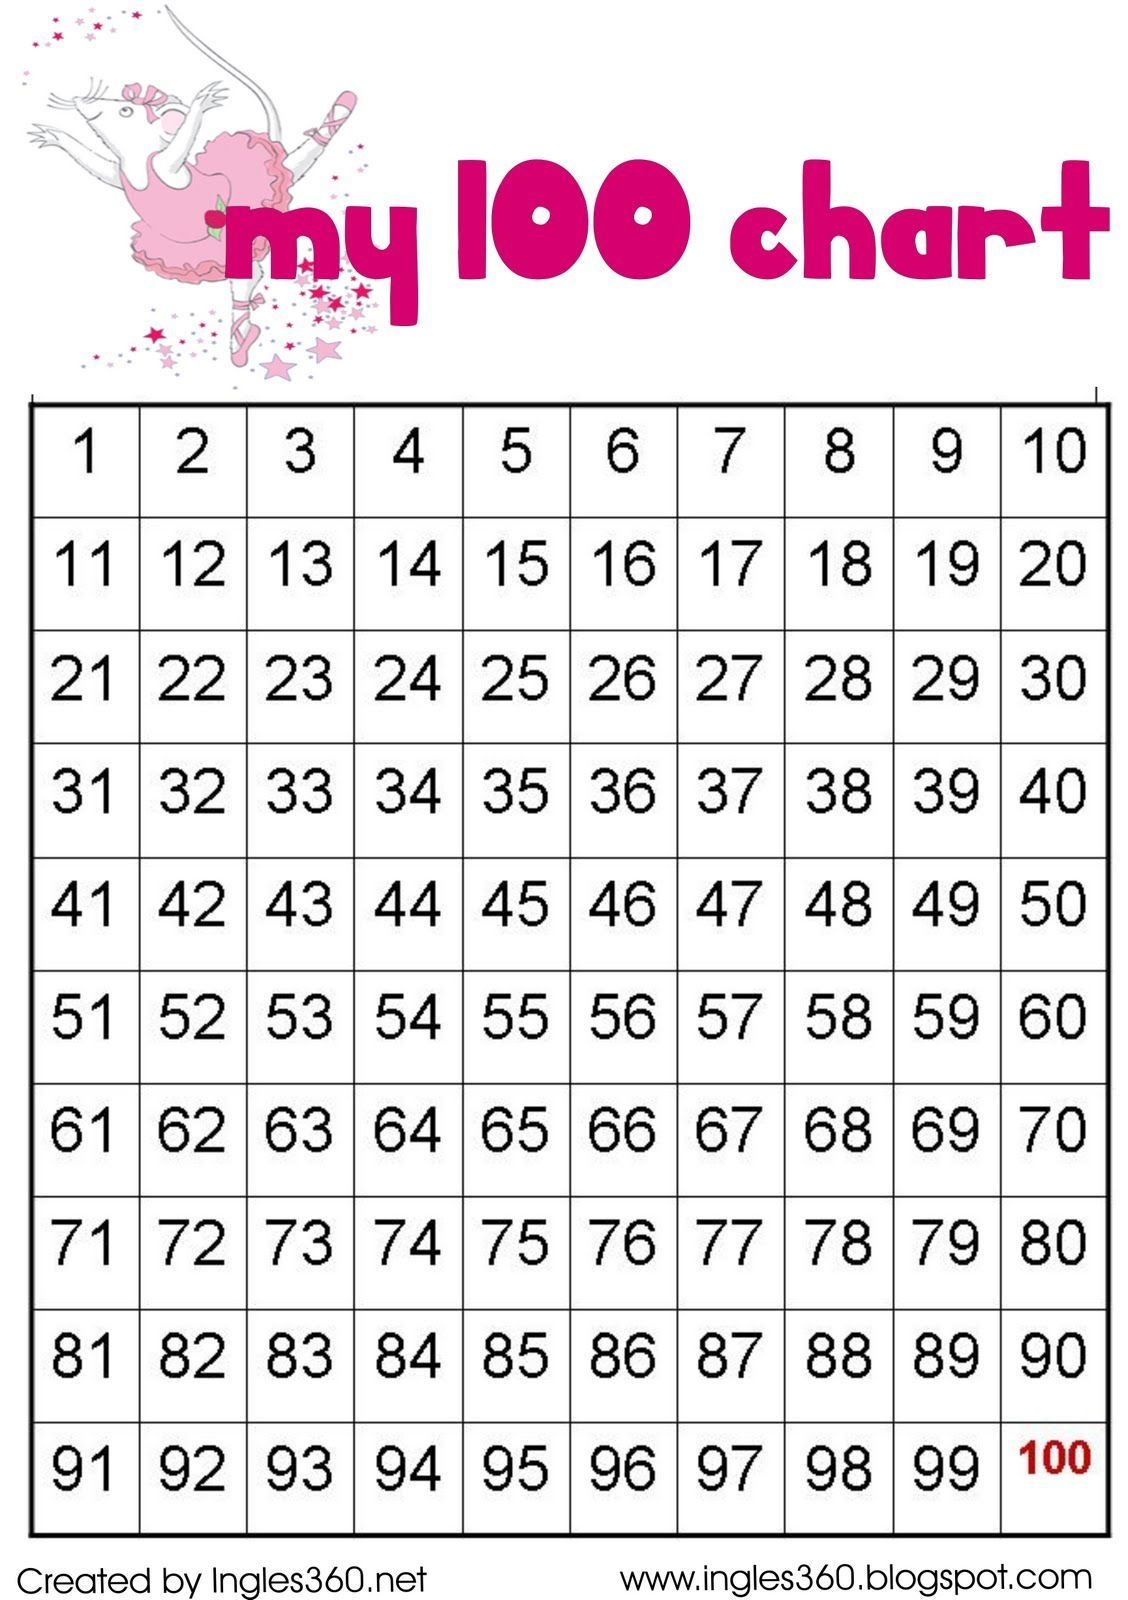 100 Chart | 100 Number Chart, Number Chart, 100 Chart